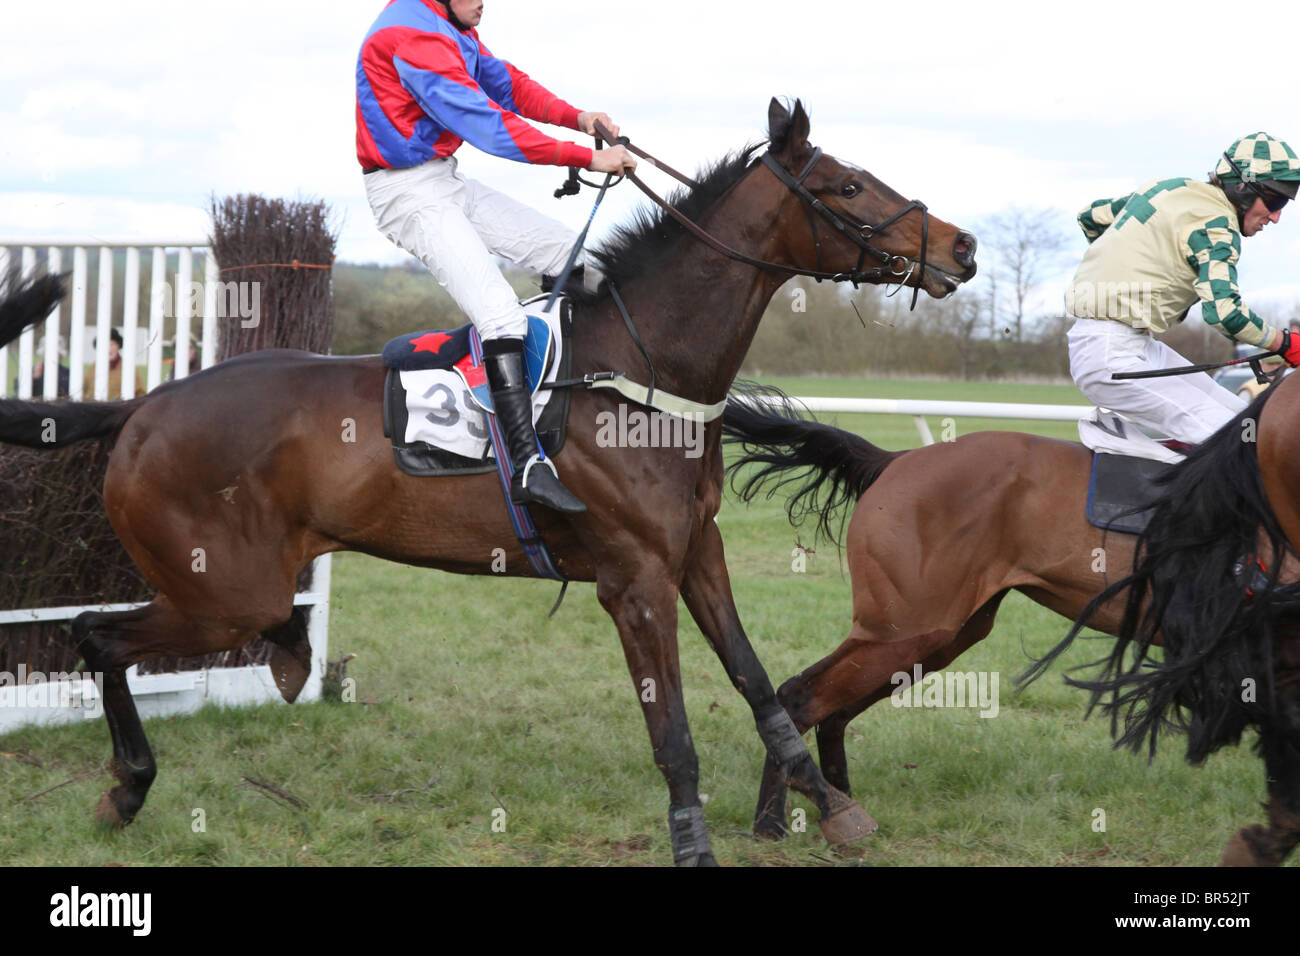 Horse and jockey maladroitement d'atterrissage après un saut dans une course de point à point Banque D'Images